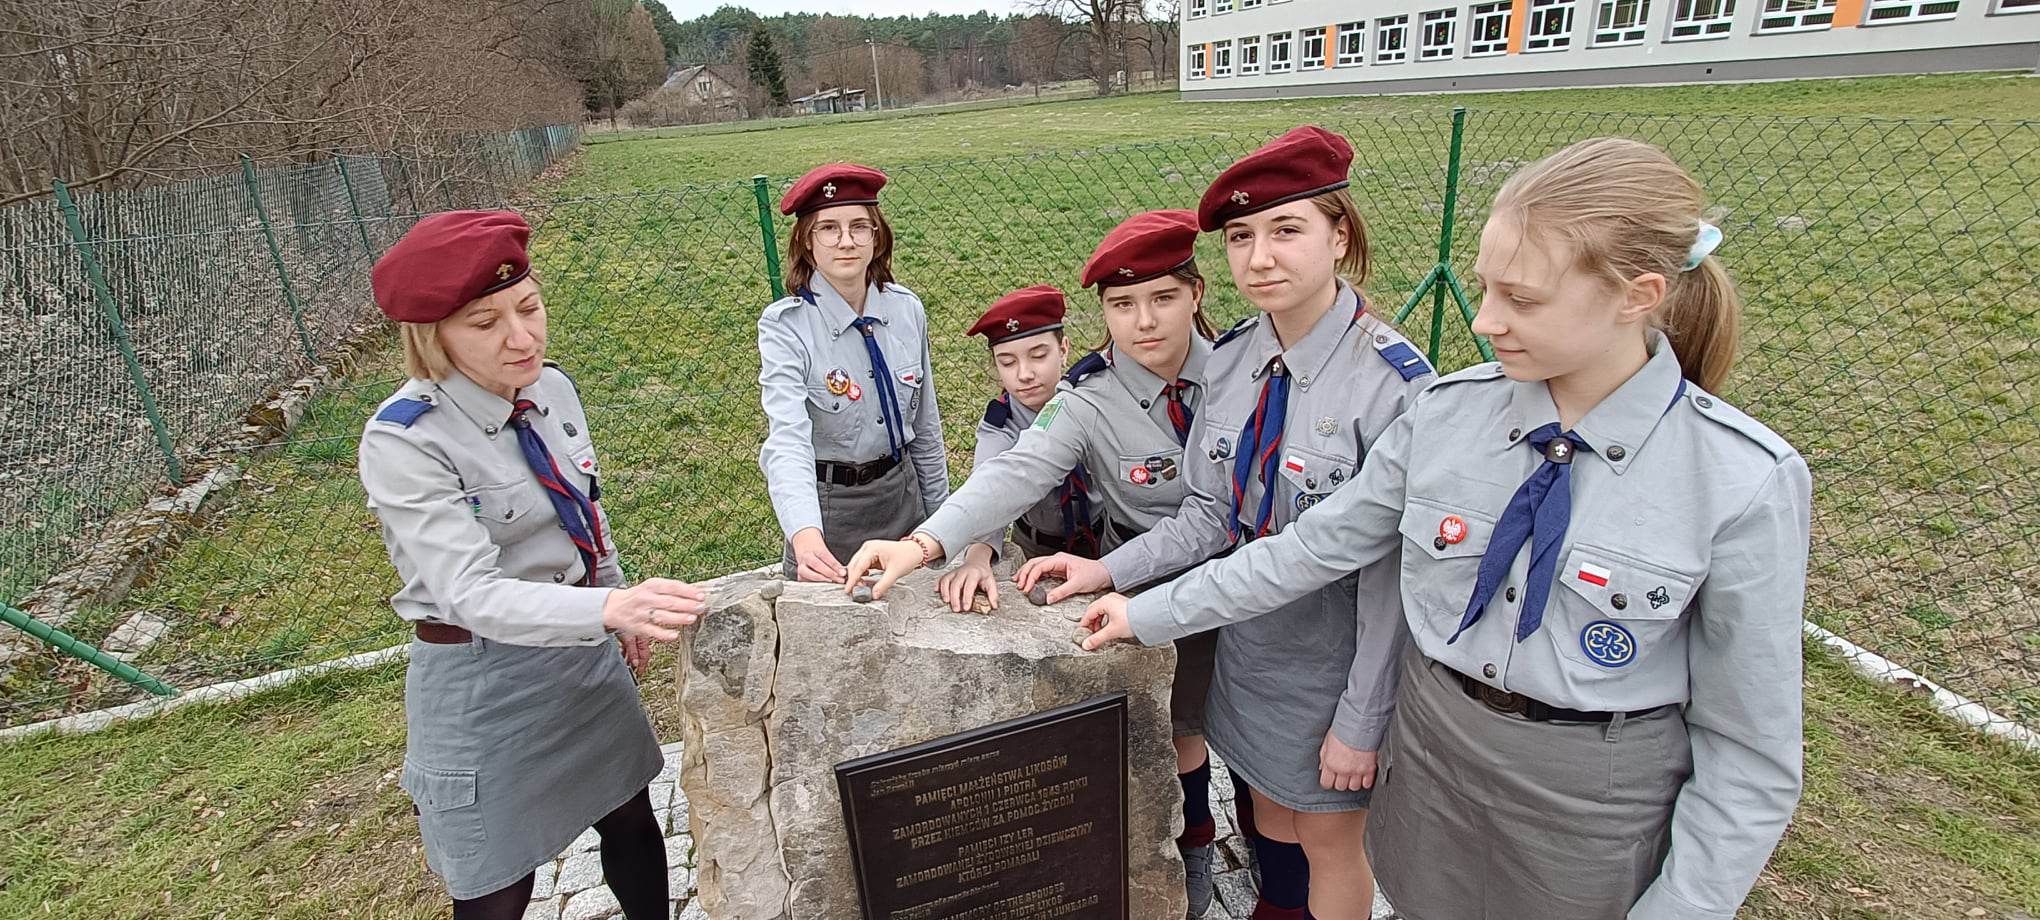 Harcerki kładą kamyki na pomniku z tablicą upamiętniającą Polaków ratujących Żydów pod okupacją niemiecką w Opoce Dużej